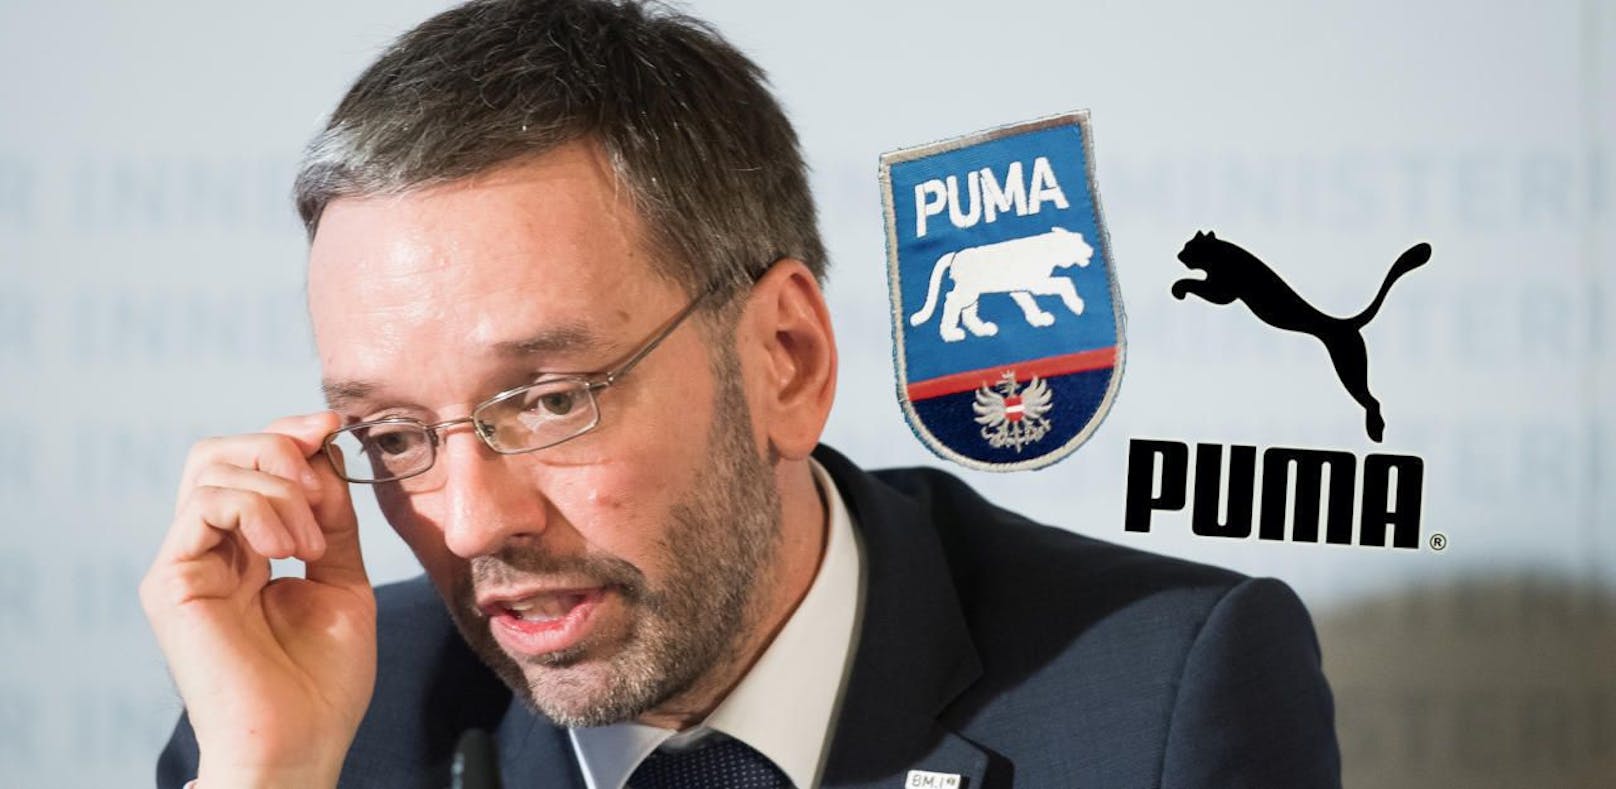 Ein Markenstreit rund um den Namen &quot;Puma&quot; könnte Innenminister Herbert Kickl noch Kopfzerbrechen bereiten.